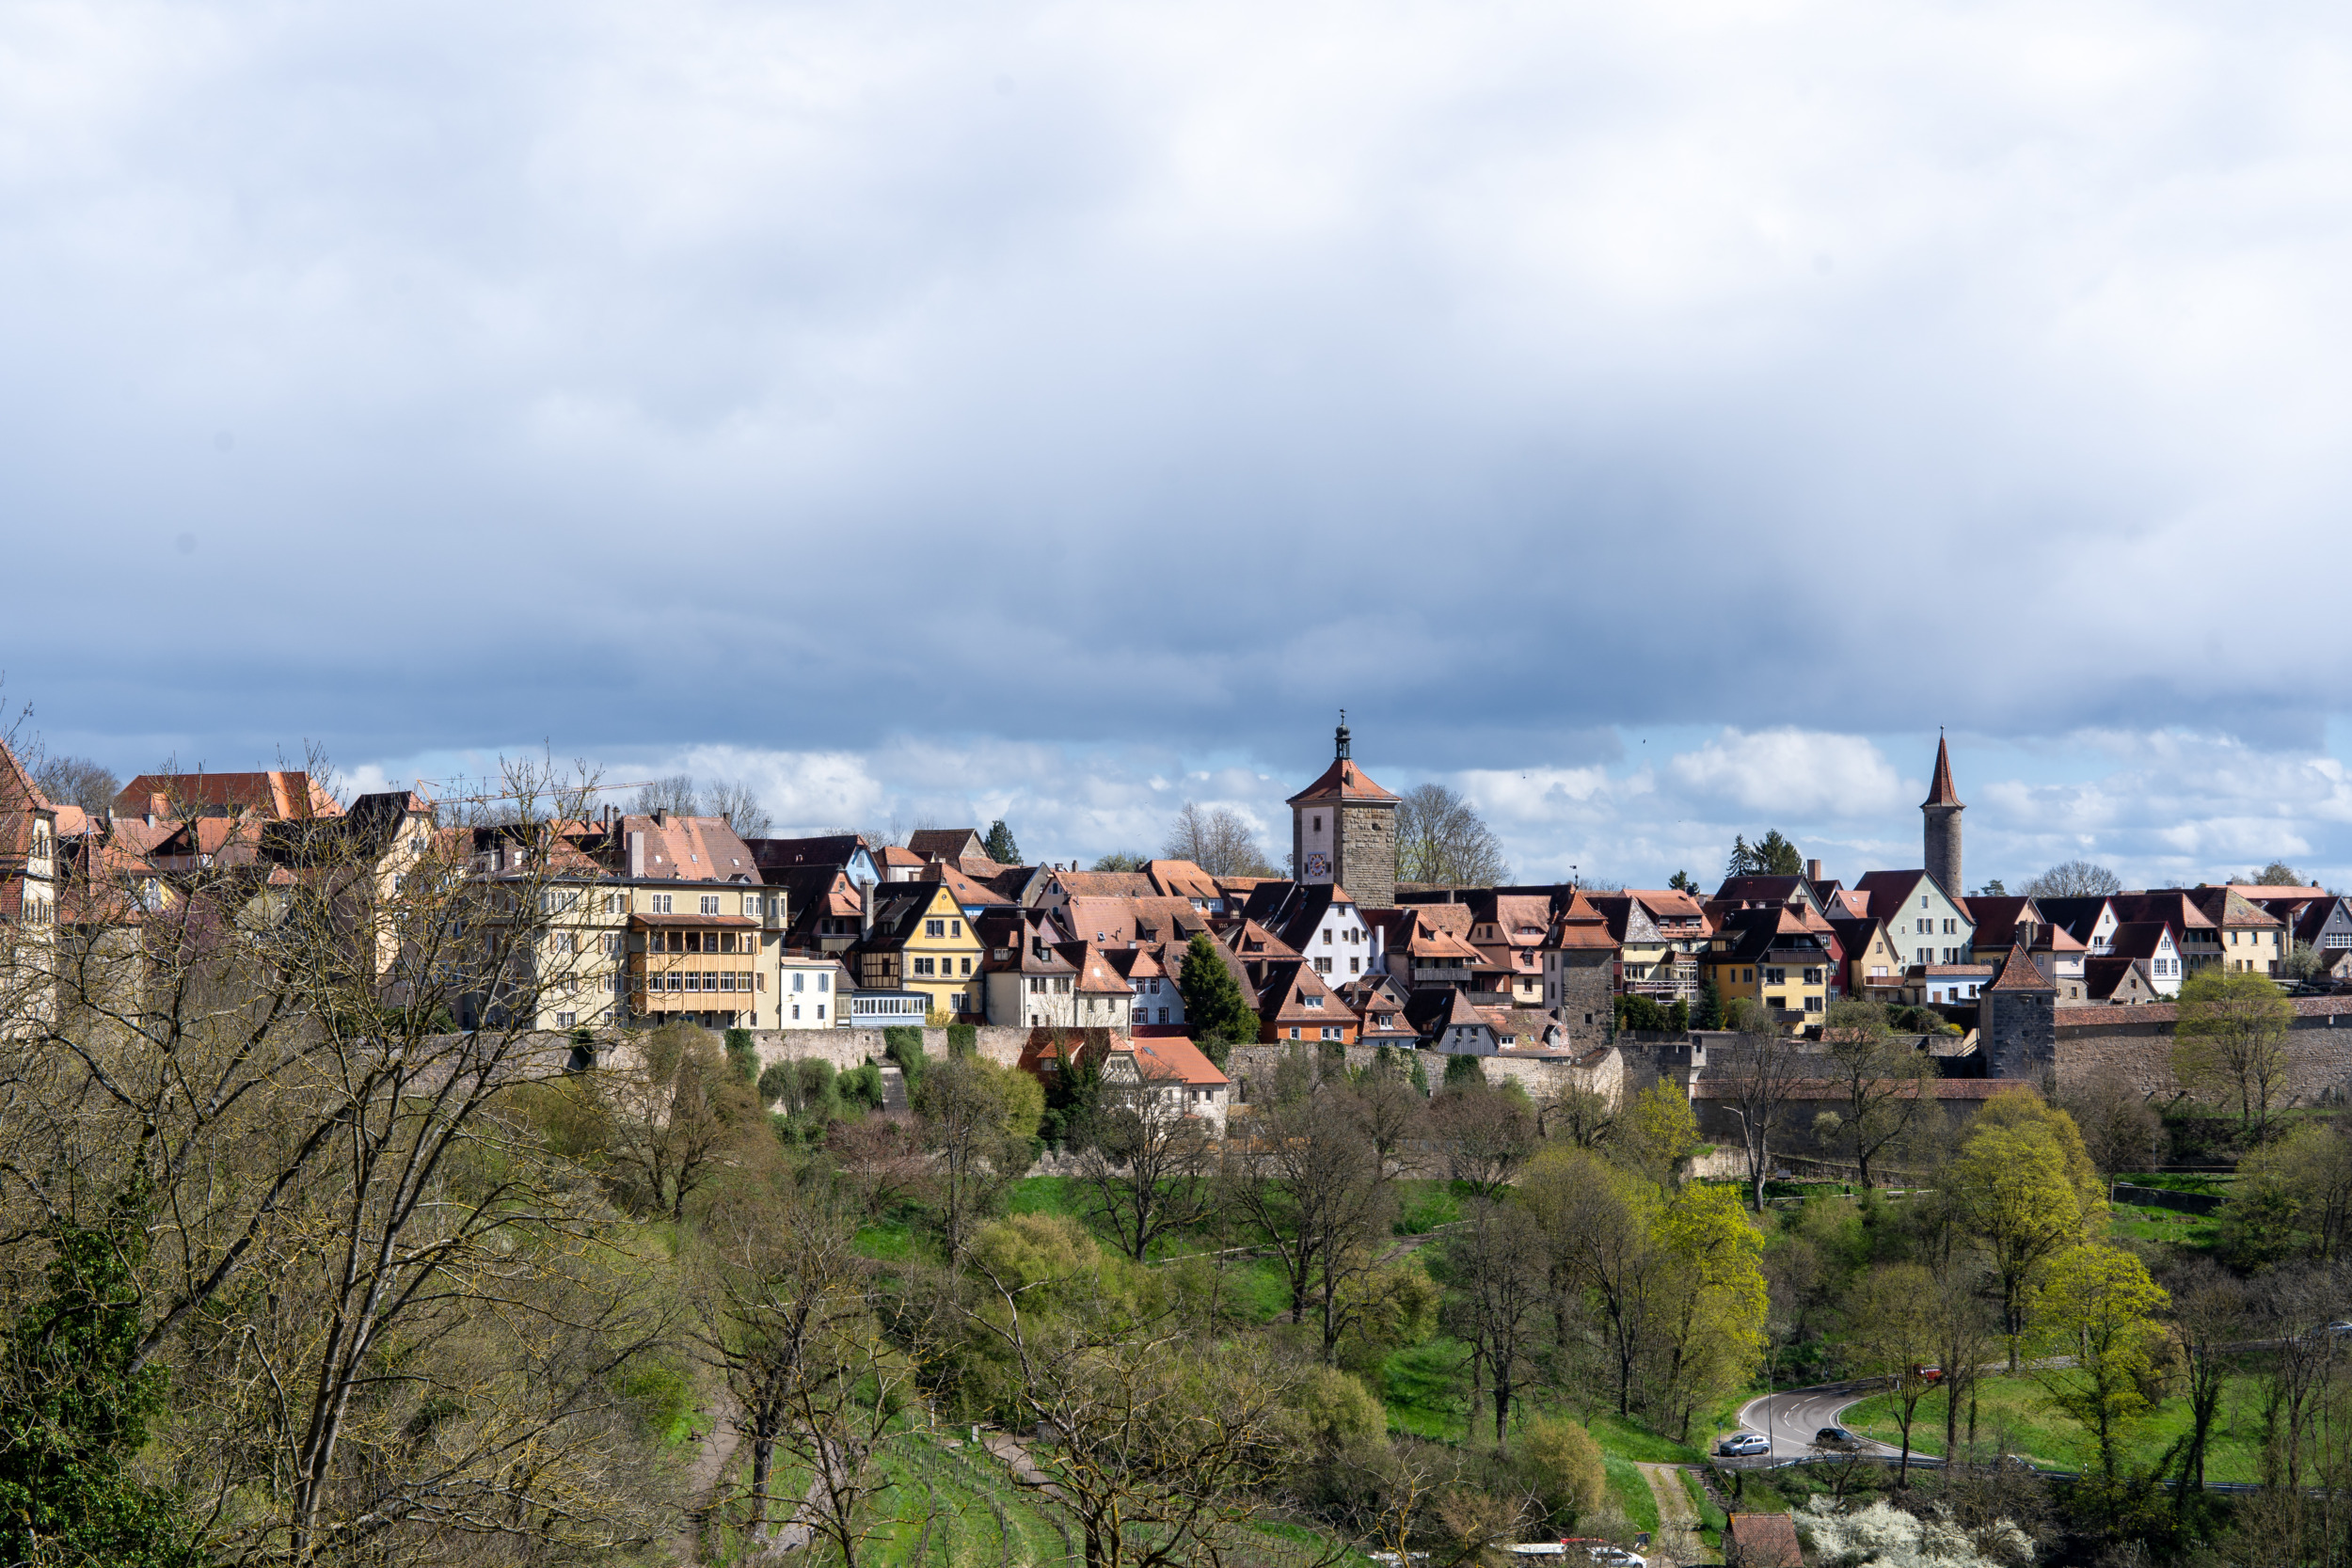 Immer wieder erhascht man von der Stadtmauer einen tollen Blick auf Rothenburg ob der Tauber